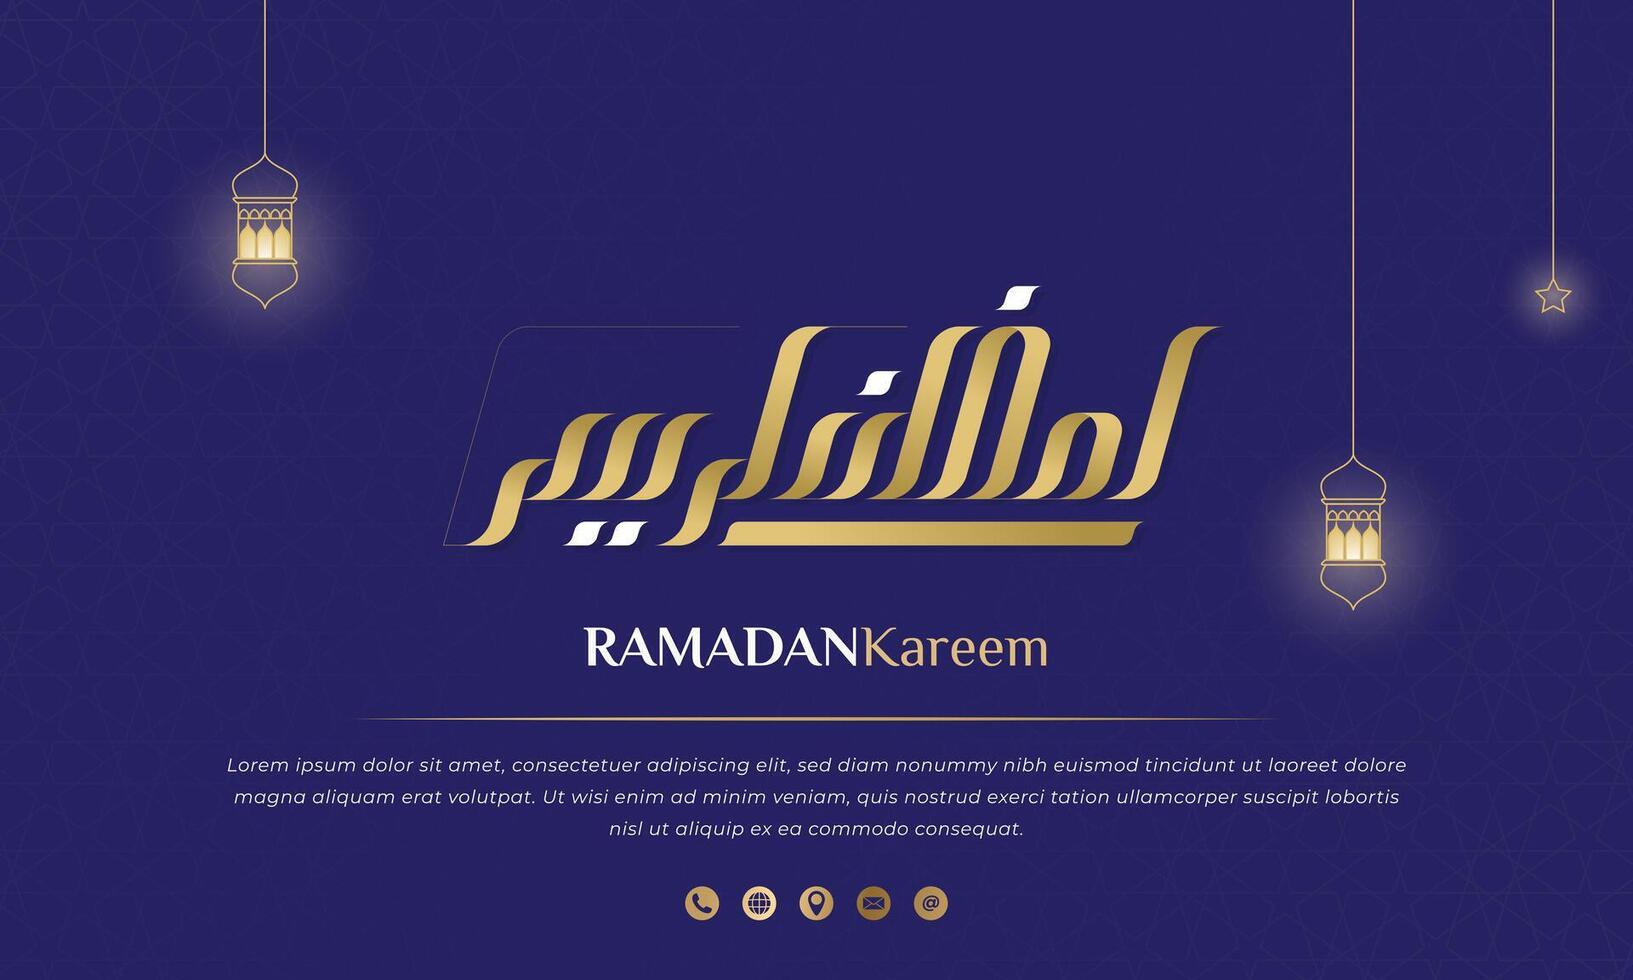 Purper Islamitisch achtergrond ontwerp met Arabisch schoonschrift voor Ramadan kareem campagne. Arabisch tekst gemeen is Ramadan kareem. Ramadan achtergrond in Purper en goud ontwerp vector